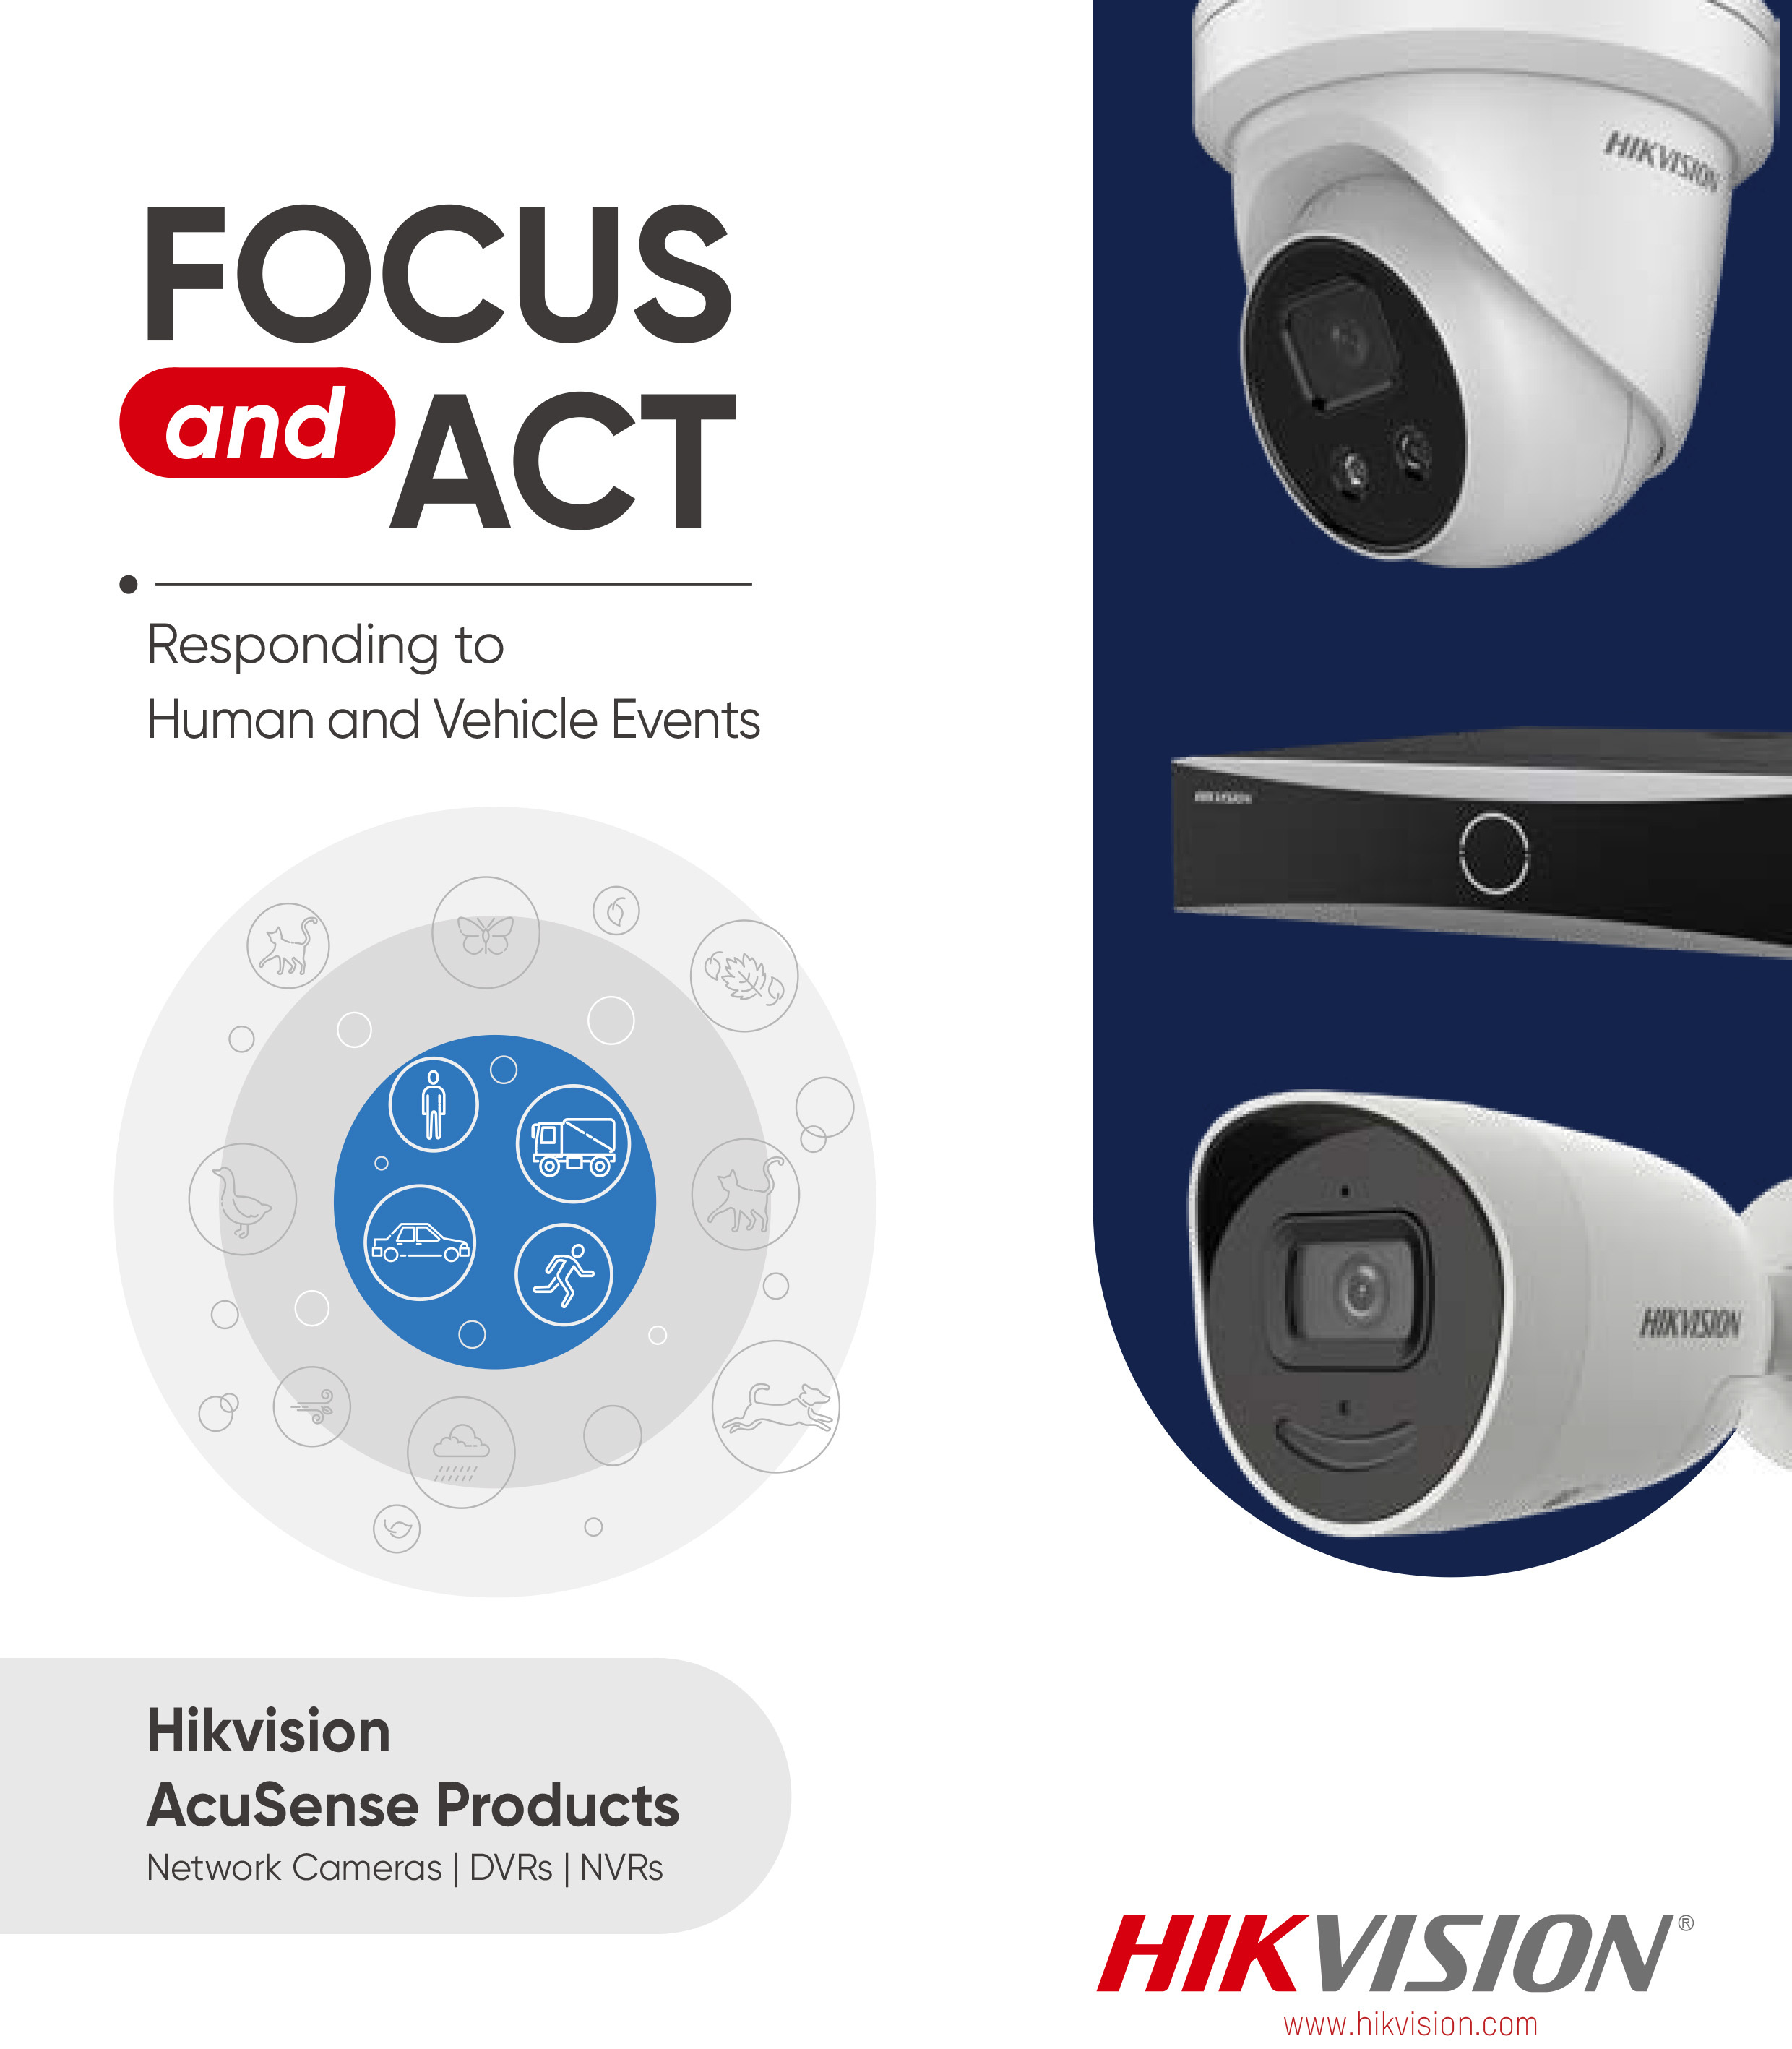 hikvision-acusense-products-leaflet-1.jpg